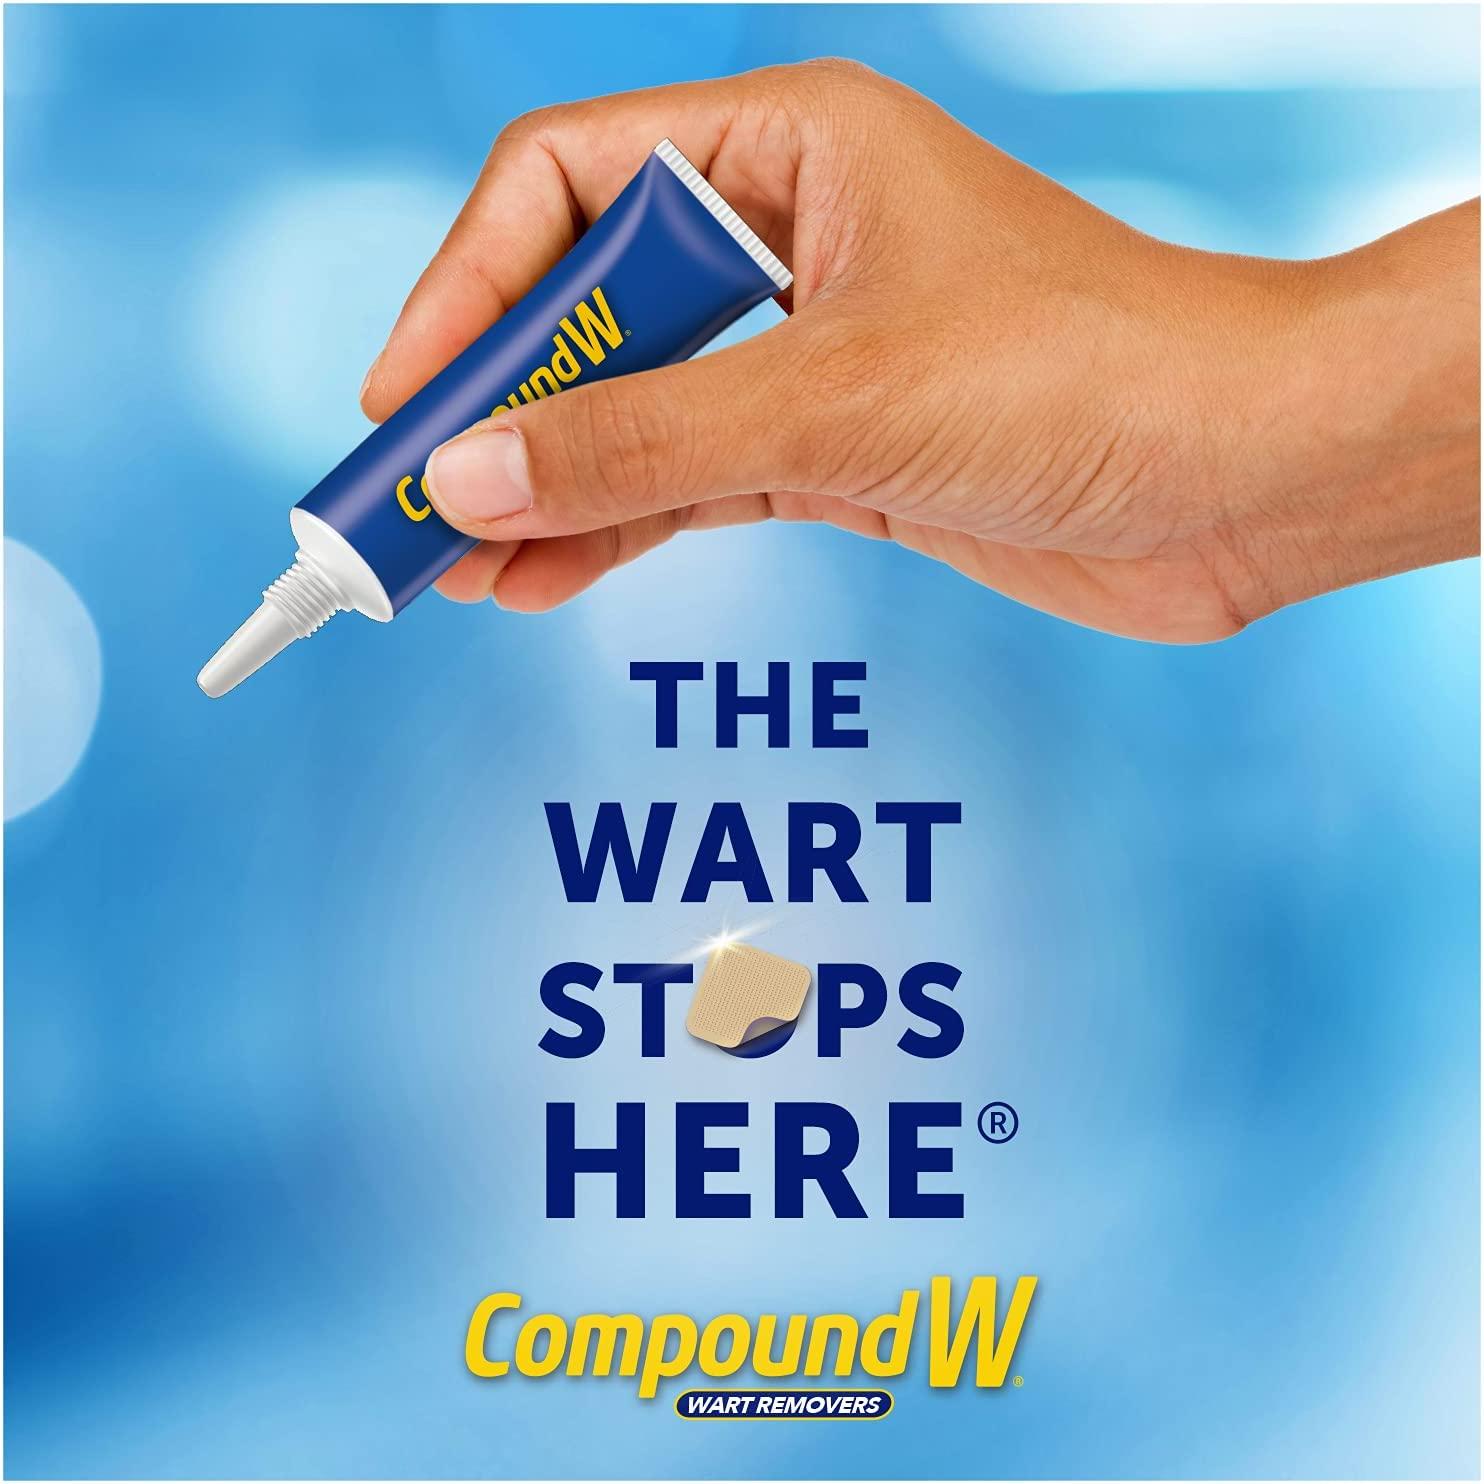 Compound W NitroFreeze GelPads Wart Removal 1 Pen 8 Replaceable Tips 3  Waterproof Hydrocolloid GelPads